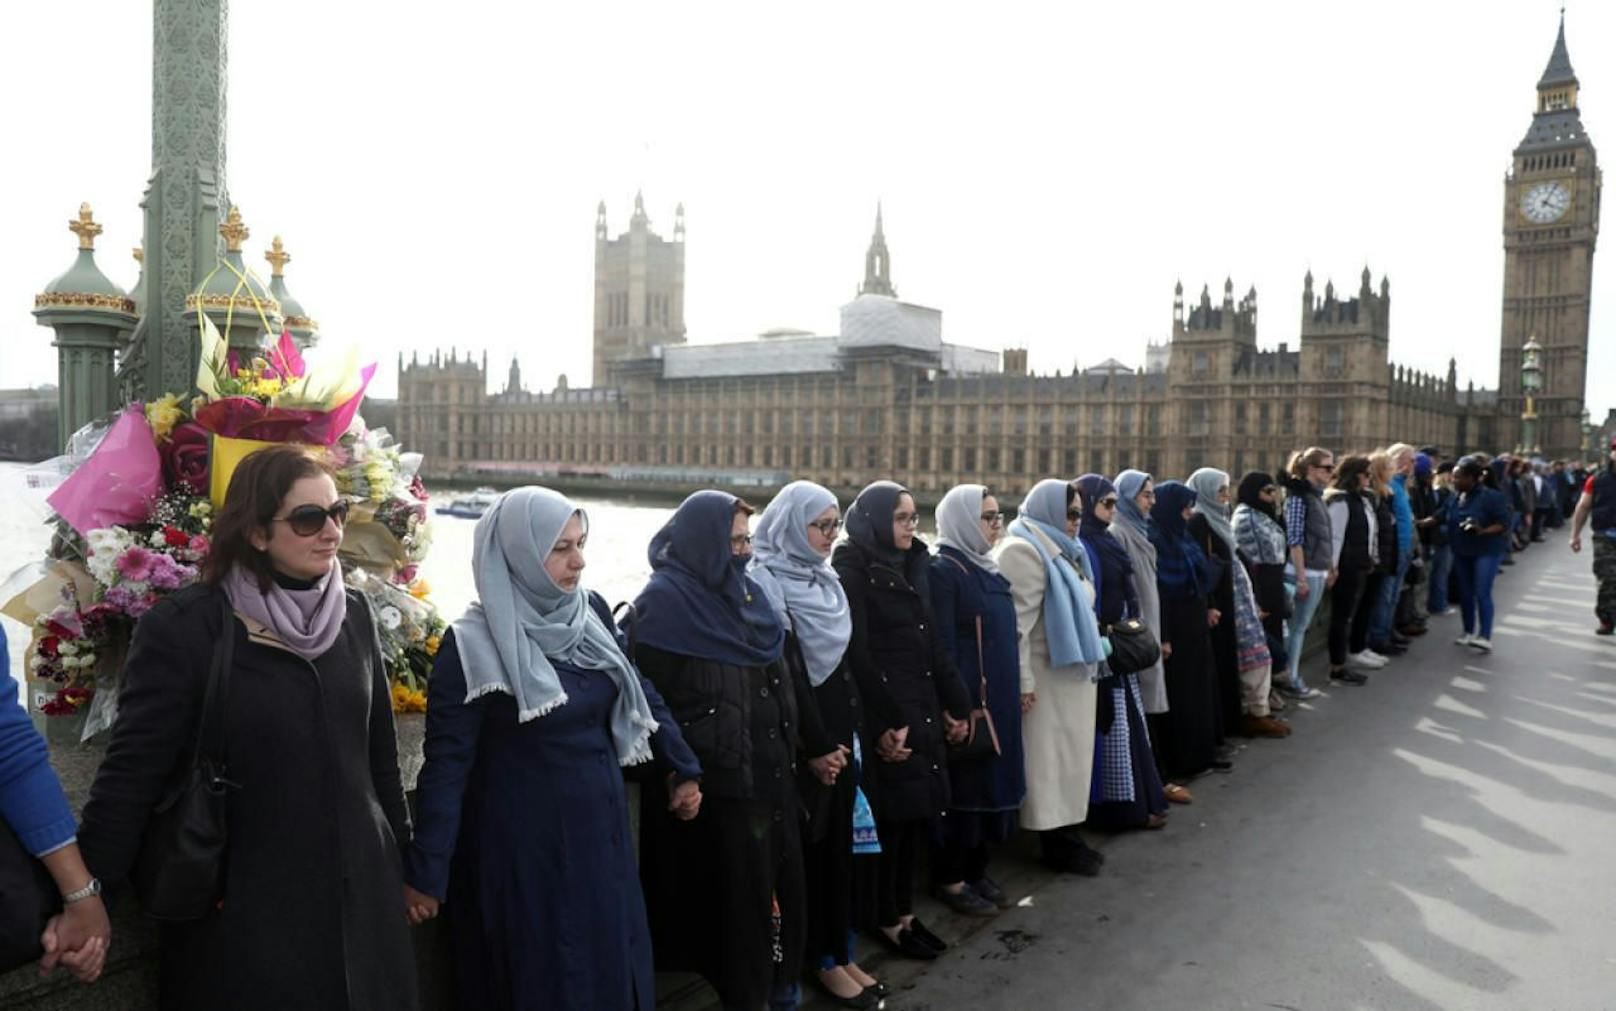 Menschenkette auf der Westminister Bridge in London